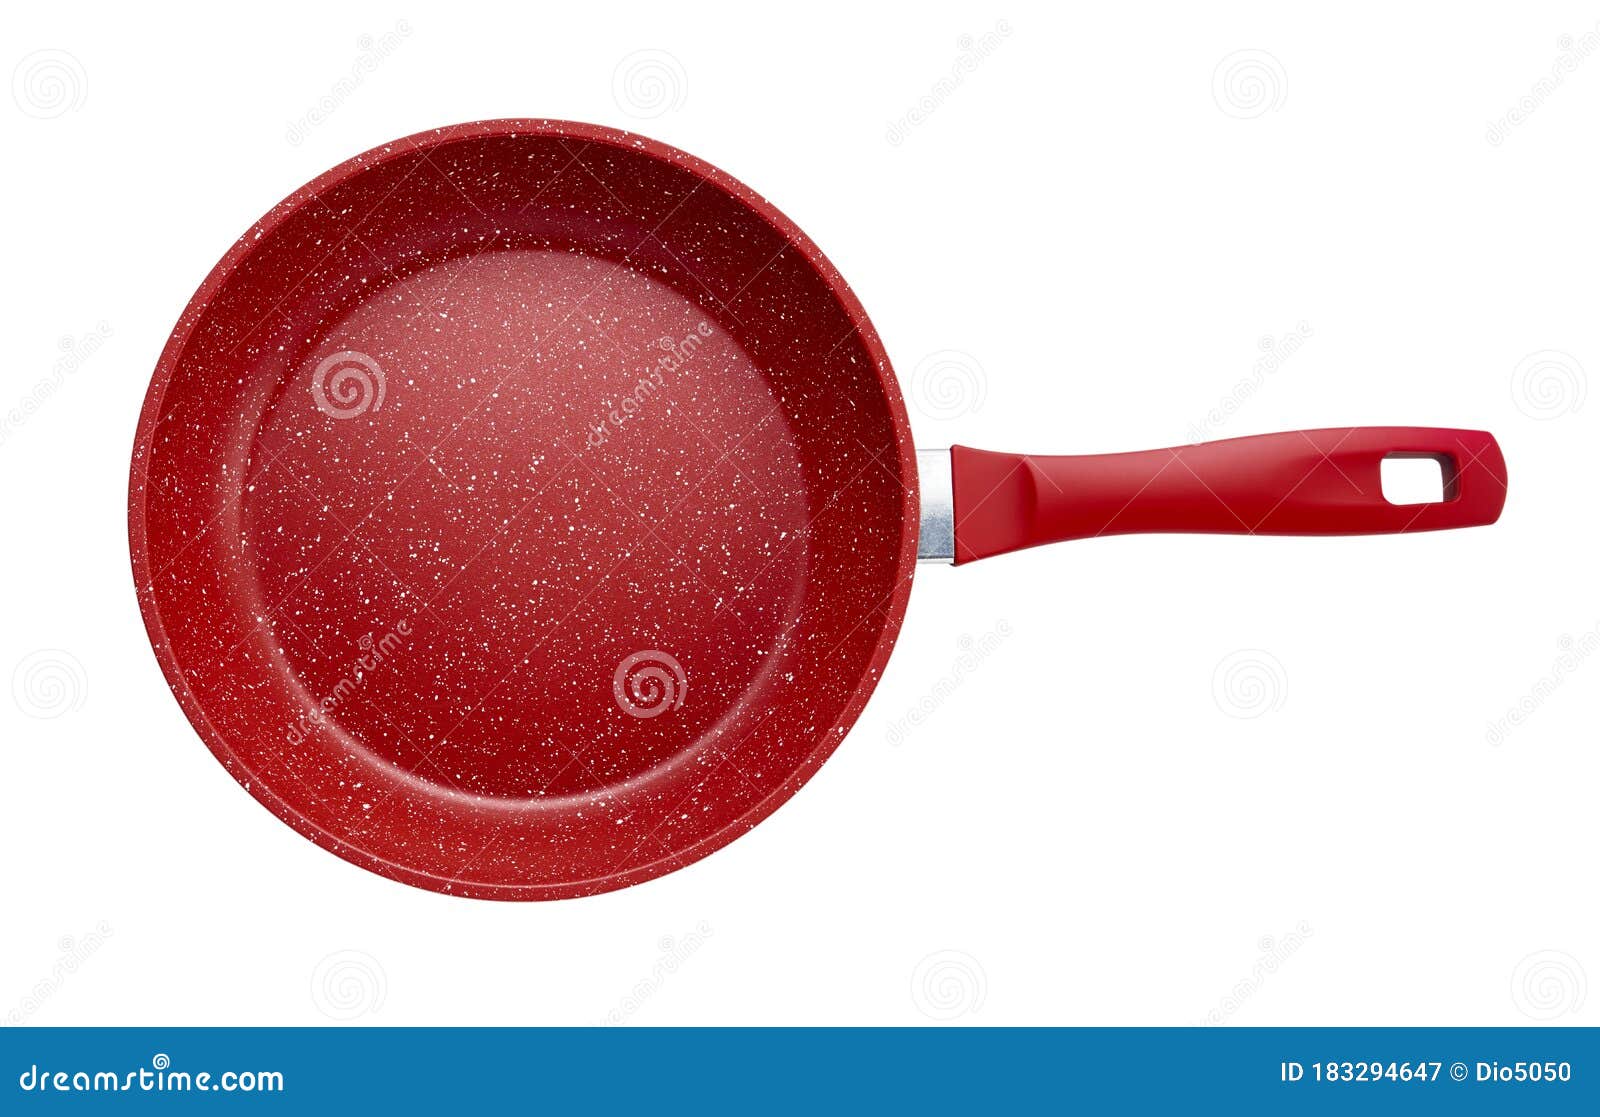  red kitchen frying pan